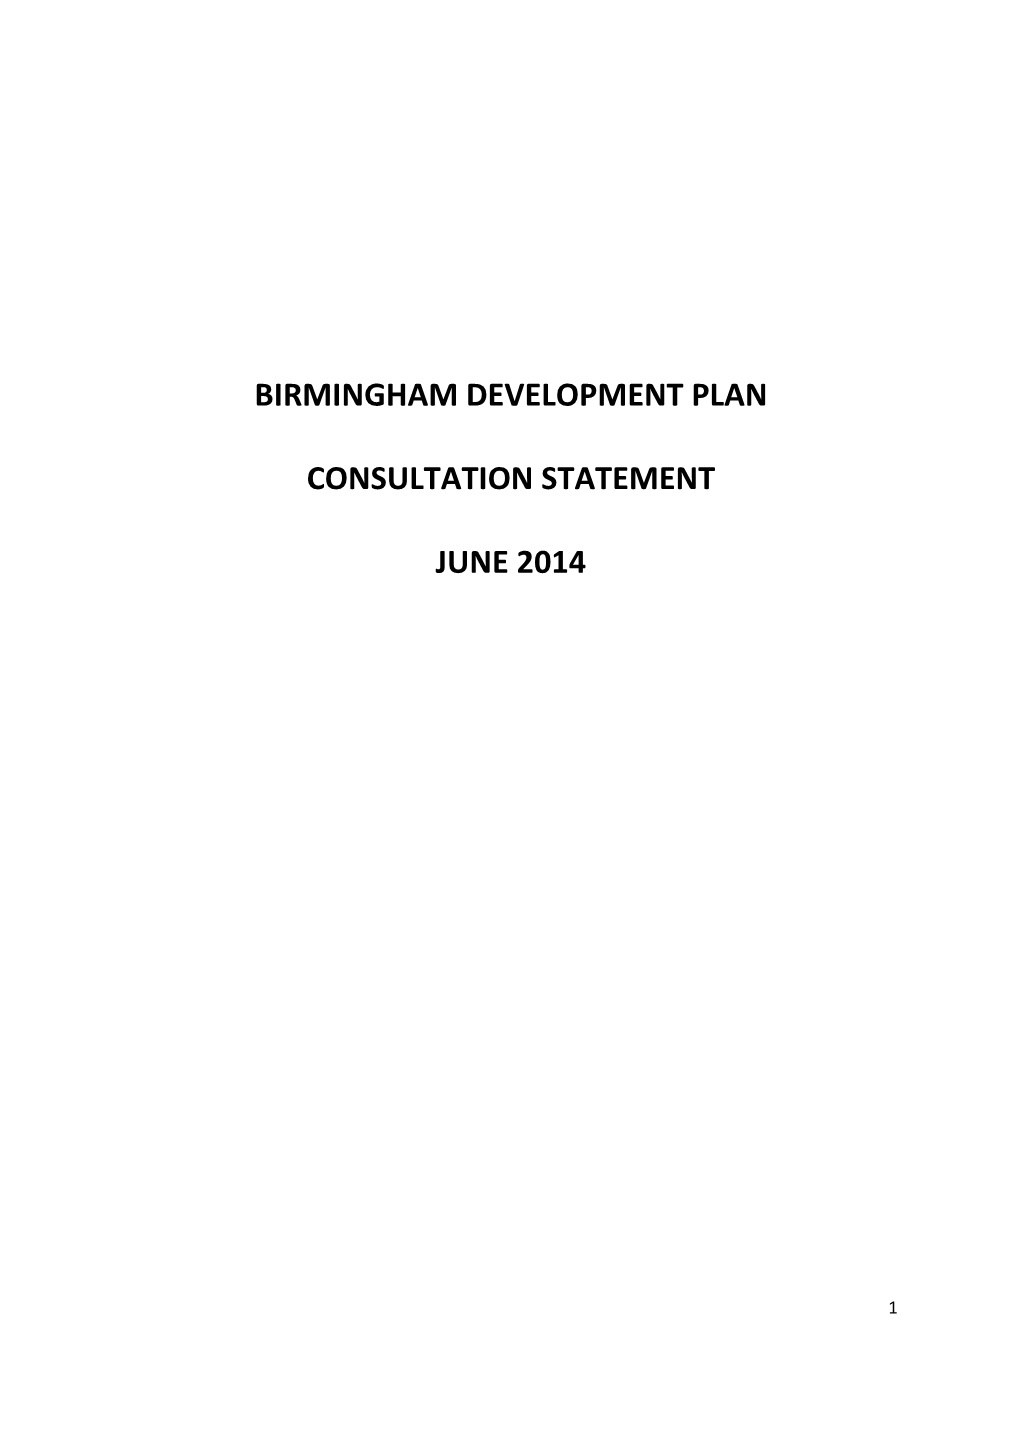 SUB11 Consultation Statement 2014